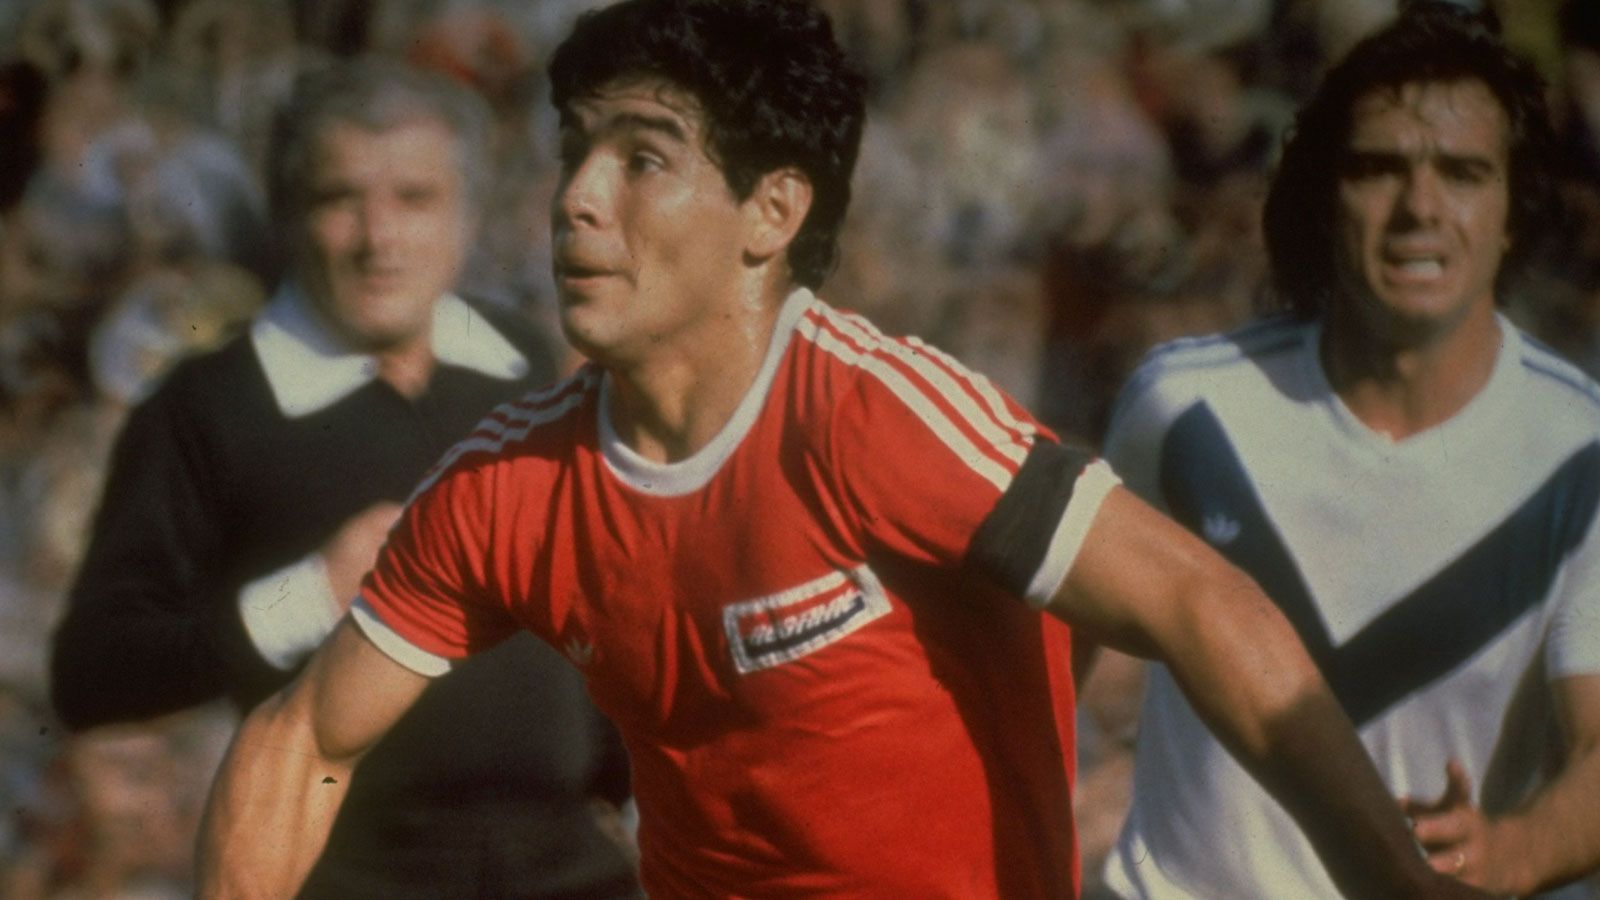 
                <strong>Debüt als 15-Jähriger - Der Goldjunge</strong><br>
                Am 20. Oktober 1976 feiert ein 15-Jähriger sein erstes Profi-Spiel für die Argentinos Juniors – Diego Armando Maradona. Sein Talent war schon damals einzigartig. Maradona wurde zum "Pibe de oro" – dem Goldjungen. Er trumpfte mit seinem linken Fuß groß auf und wurde regelmäßig Torschützenkönig. Mit 20 folgte der nächste Schritt.
              